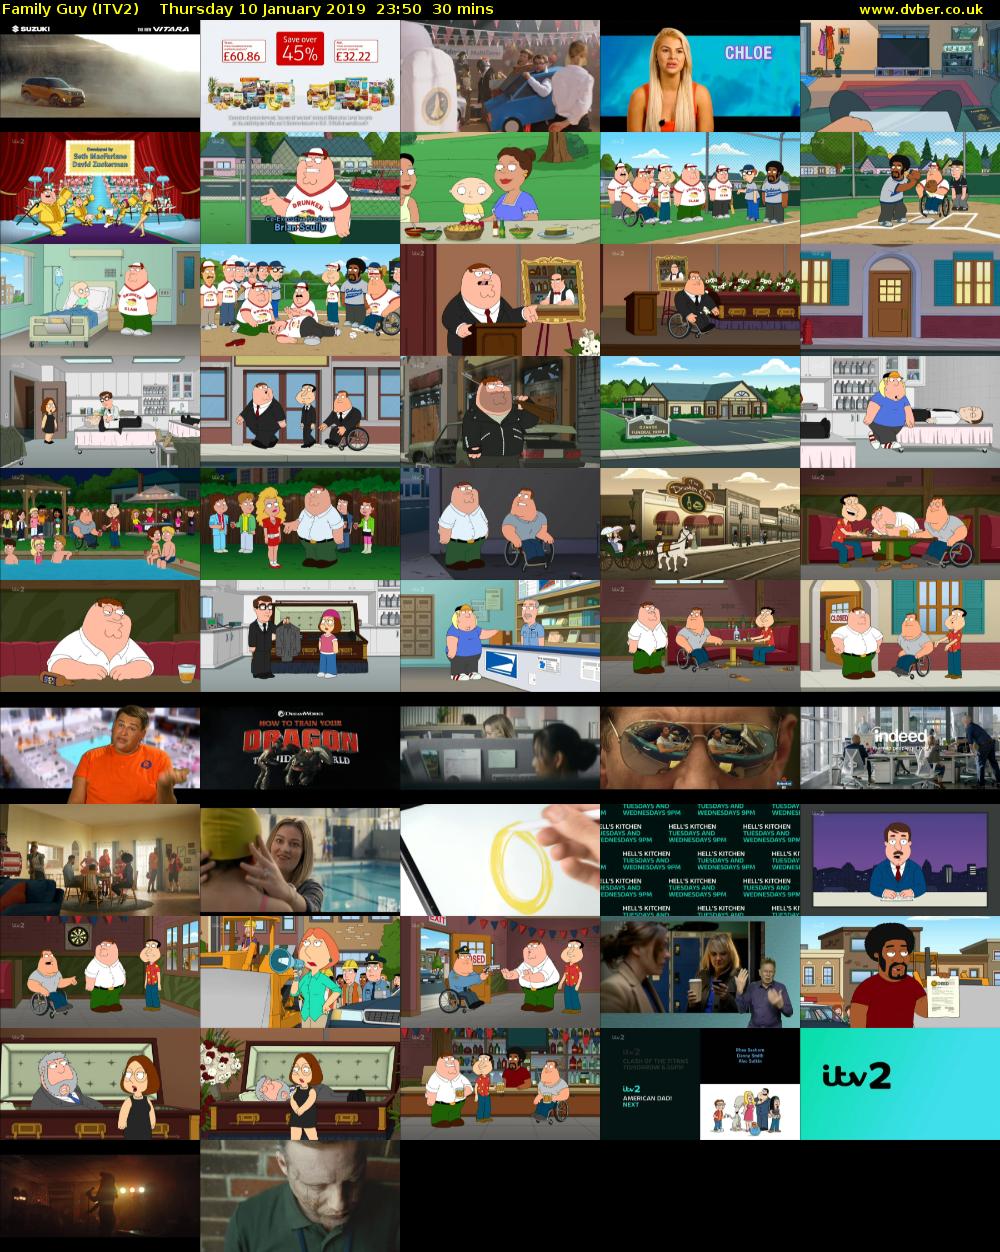 Family Guy (ITV2) Thursday 10 January 2019 23:50 - 00:20